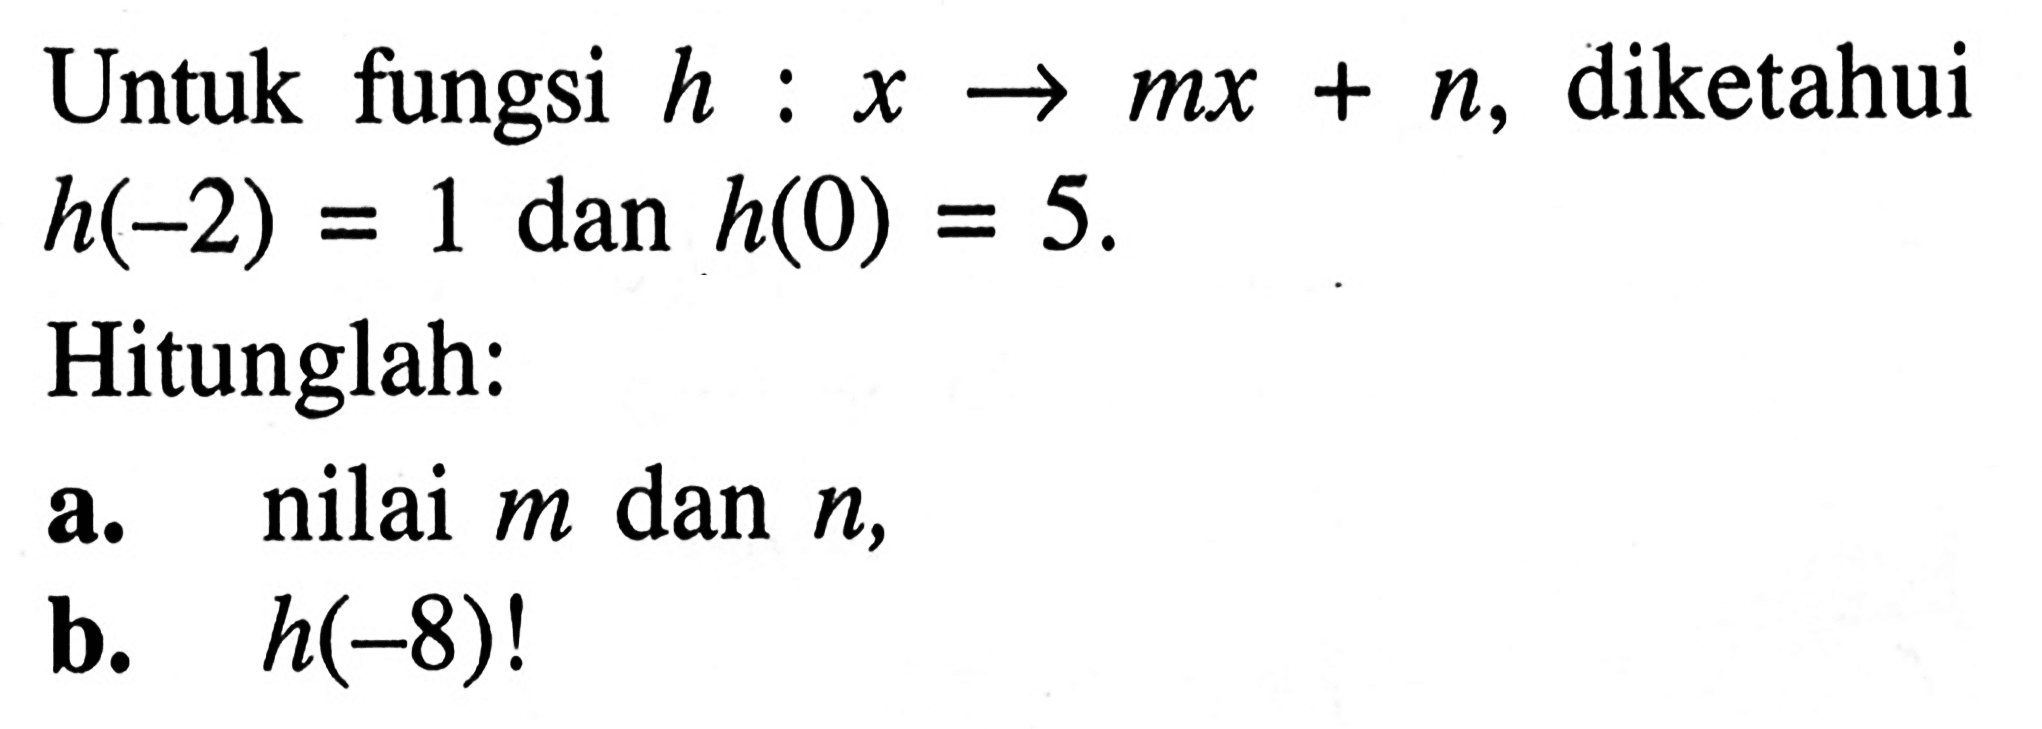 Untuk fungsi h : x -> mx + n, diketahui h(-2) = 1 dan h(0) = 5. Hitunglah : a. nilai m dan n, b. h(-8) !